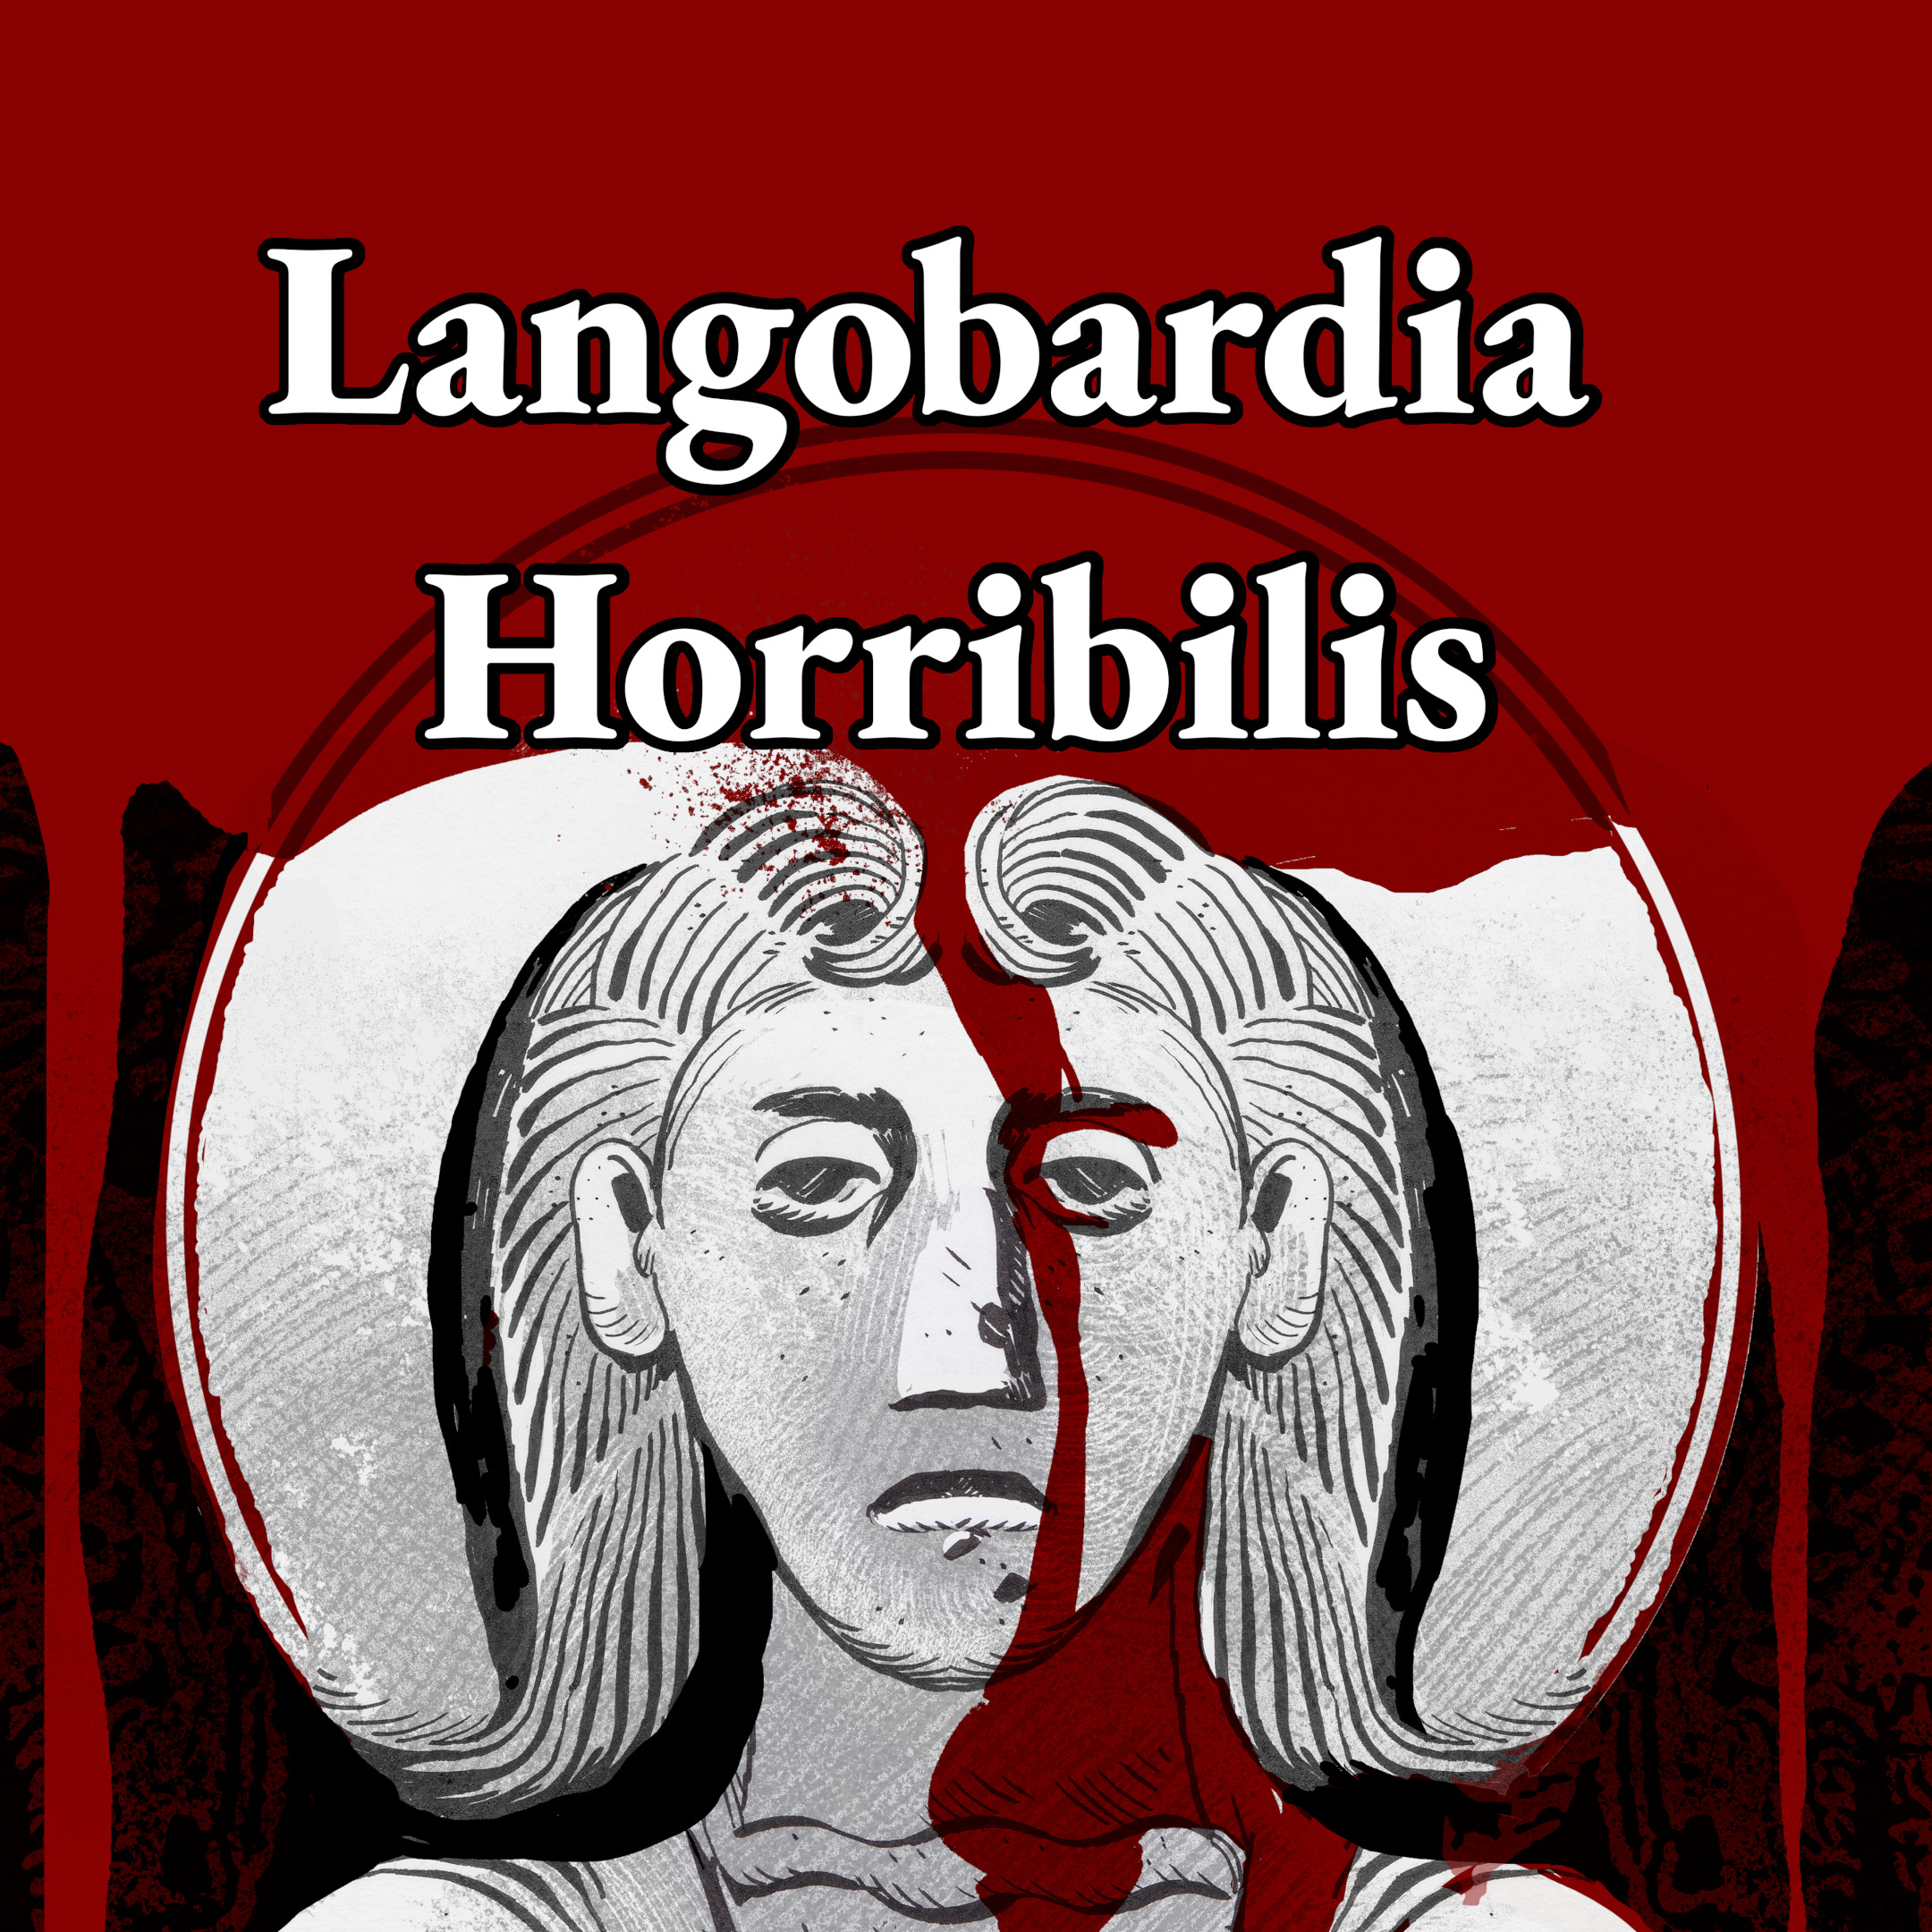 Langobardia Horribilis